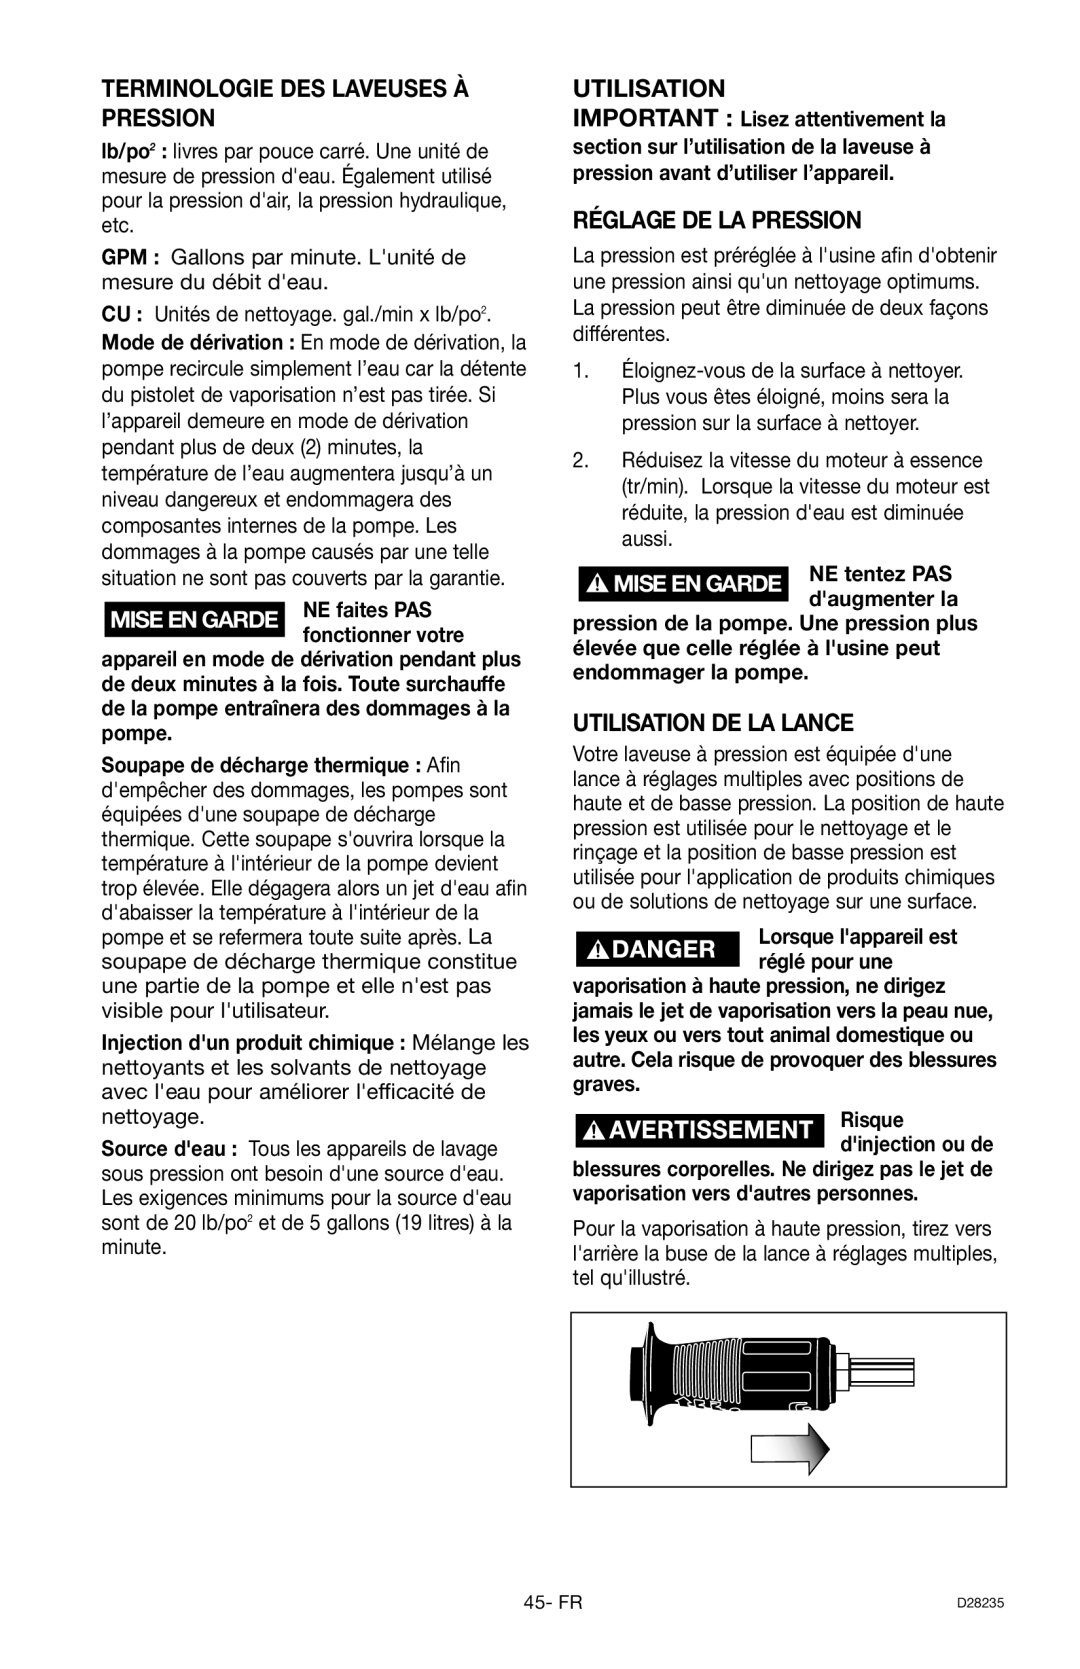 Craftsman 919.672241, D28235 Terminologie Des Laveuses À Pression, Réglage De La Pression, Utilisation De La Lance 